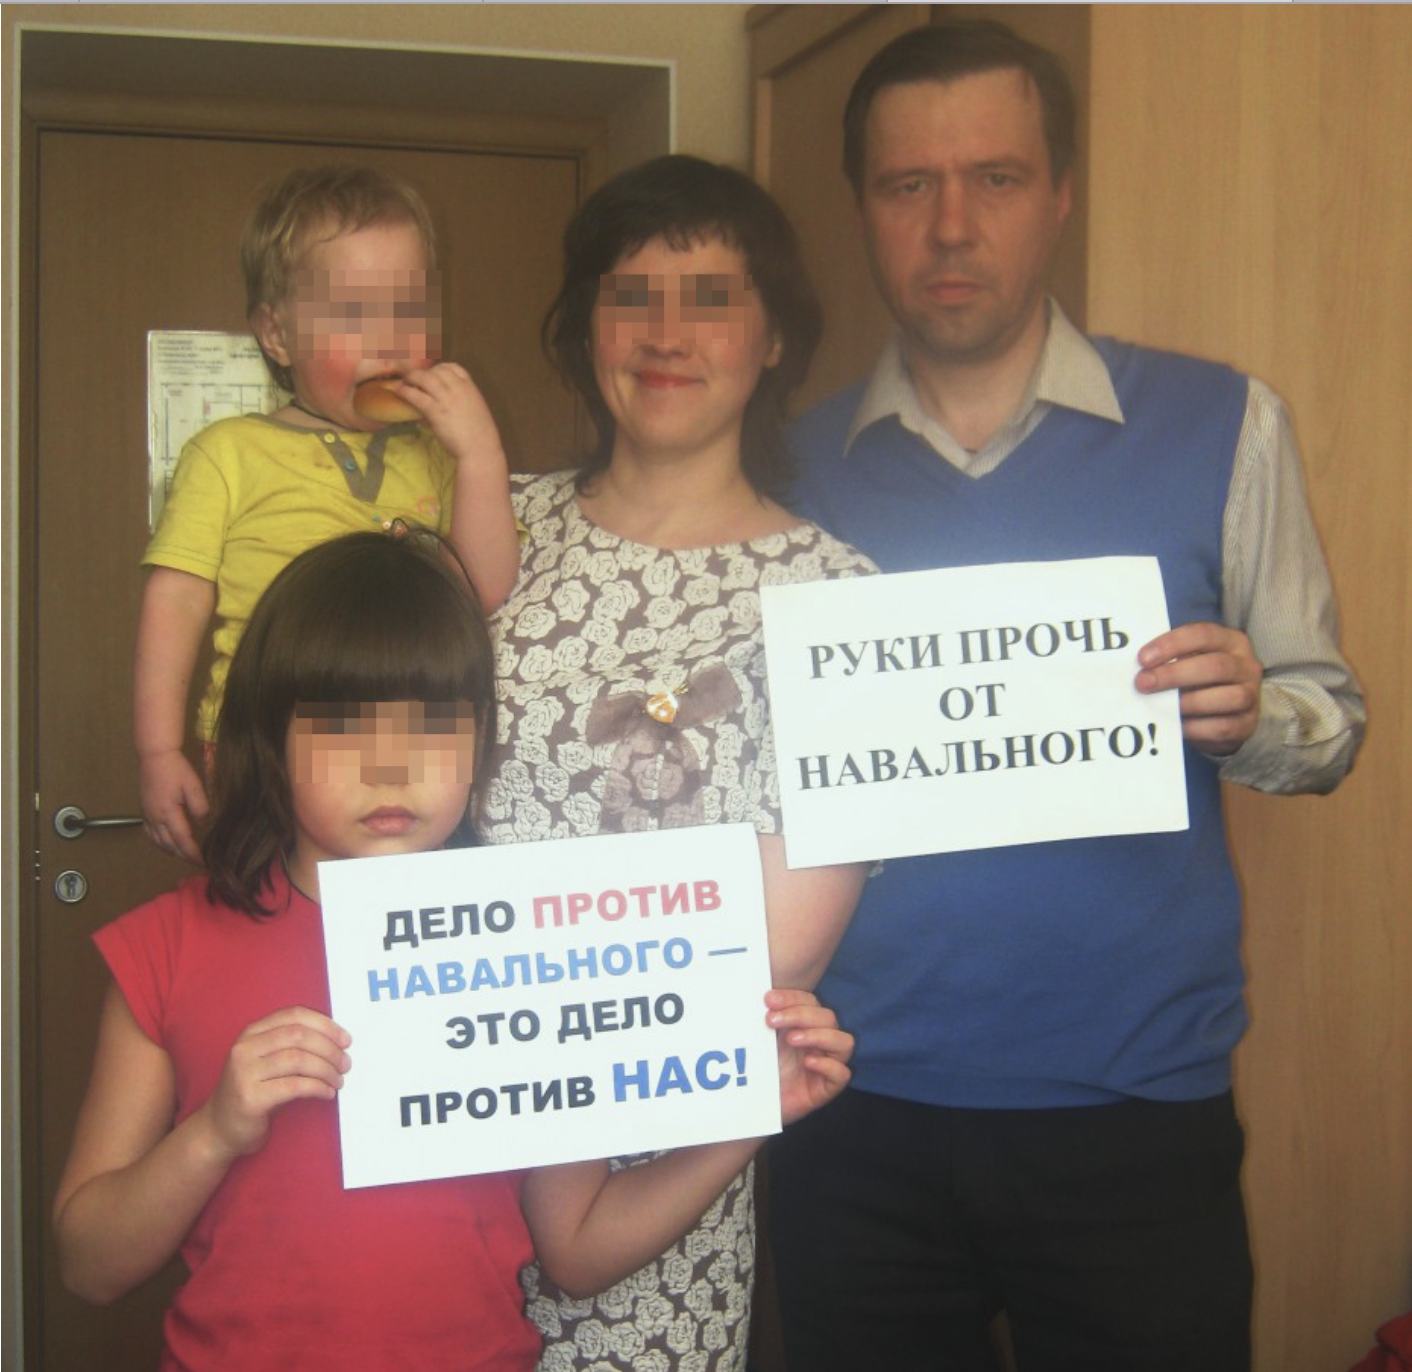 Дело против Навального - дело против нас